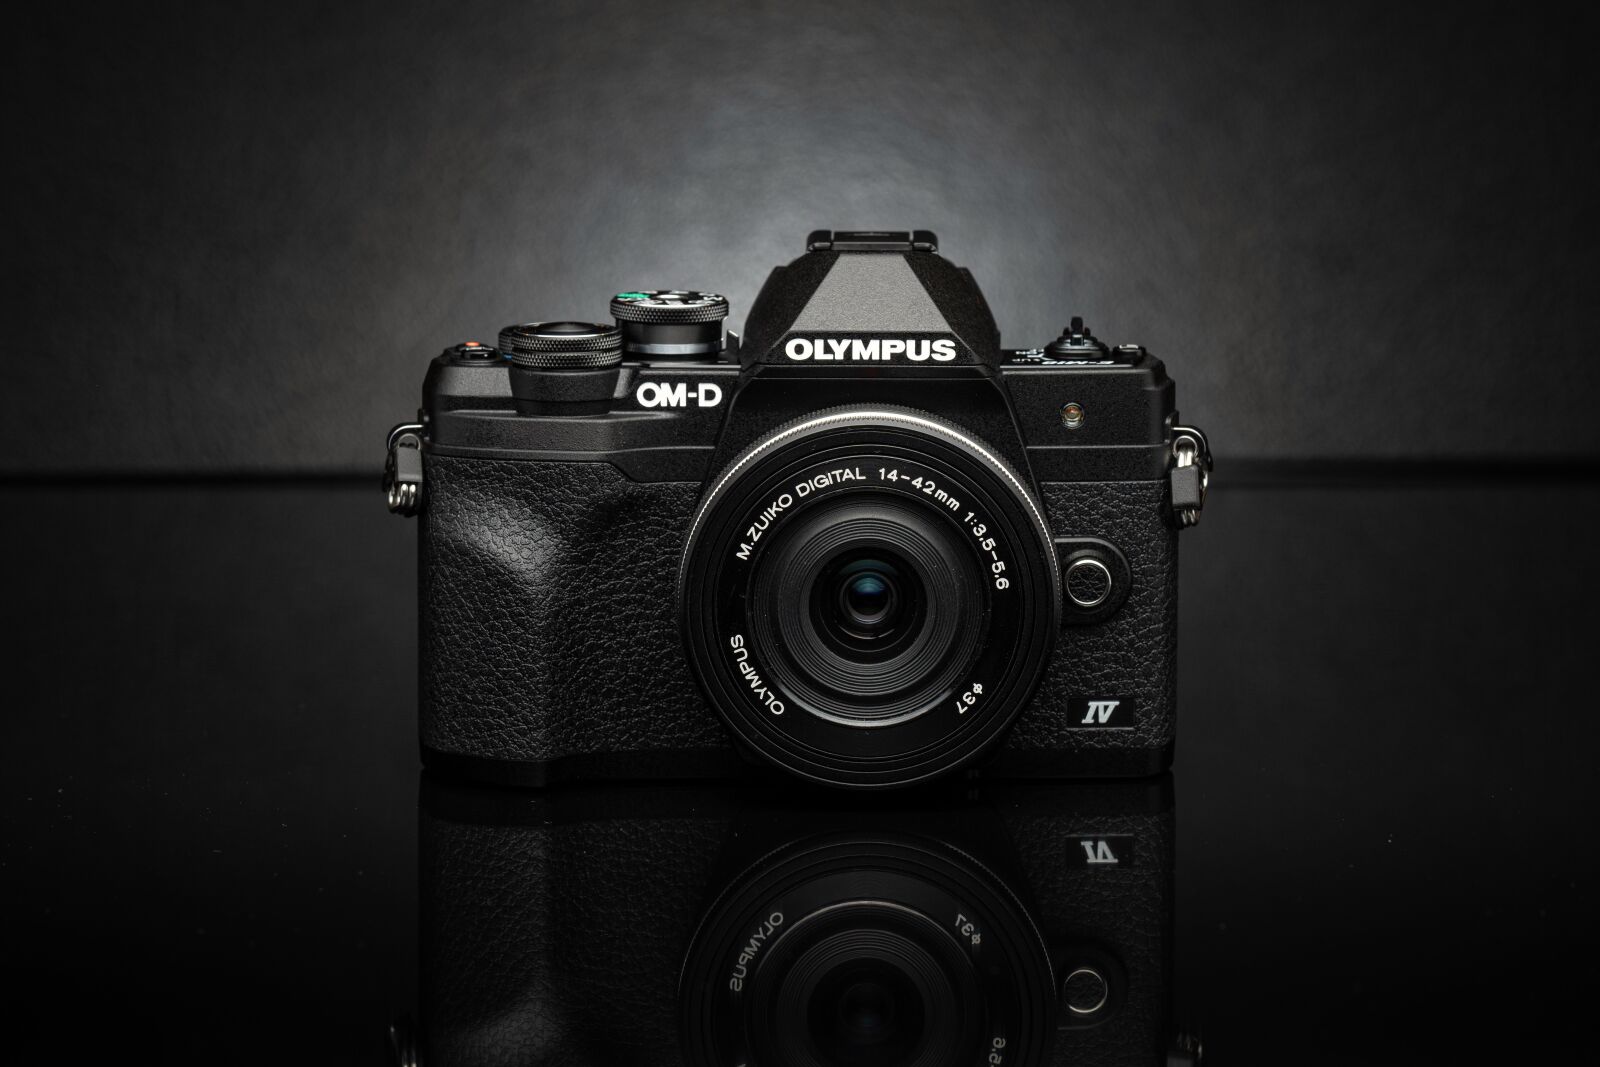 Sony a7R IV sample photo. Olympus om-d e-m10 mark photography